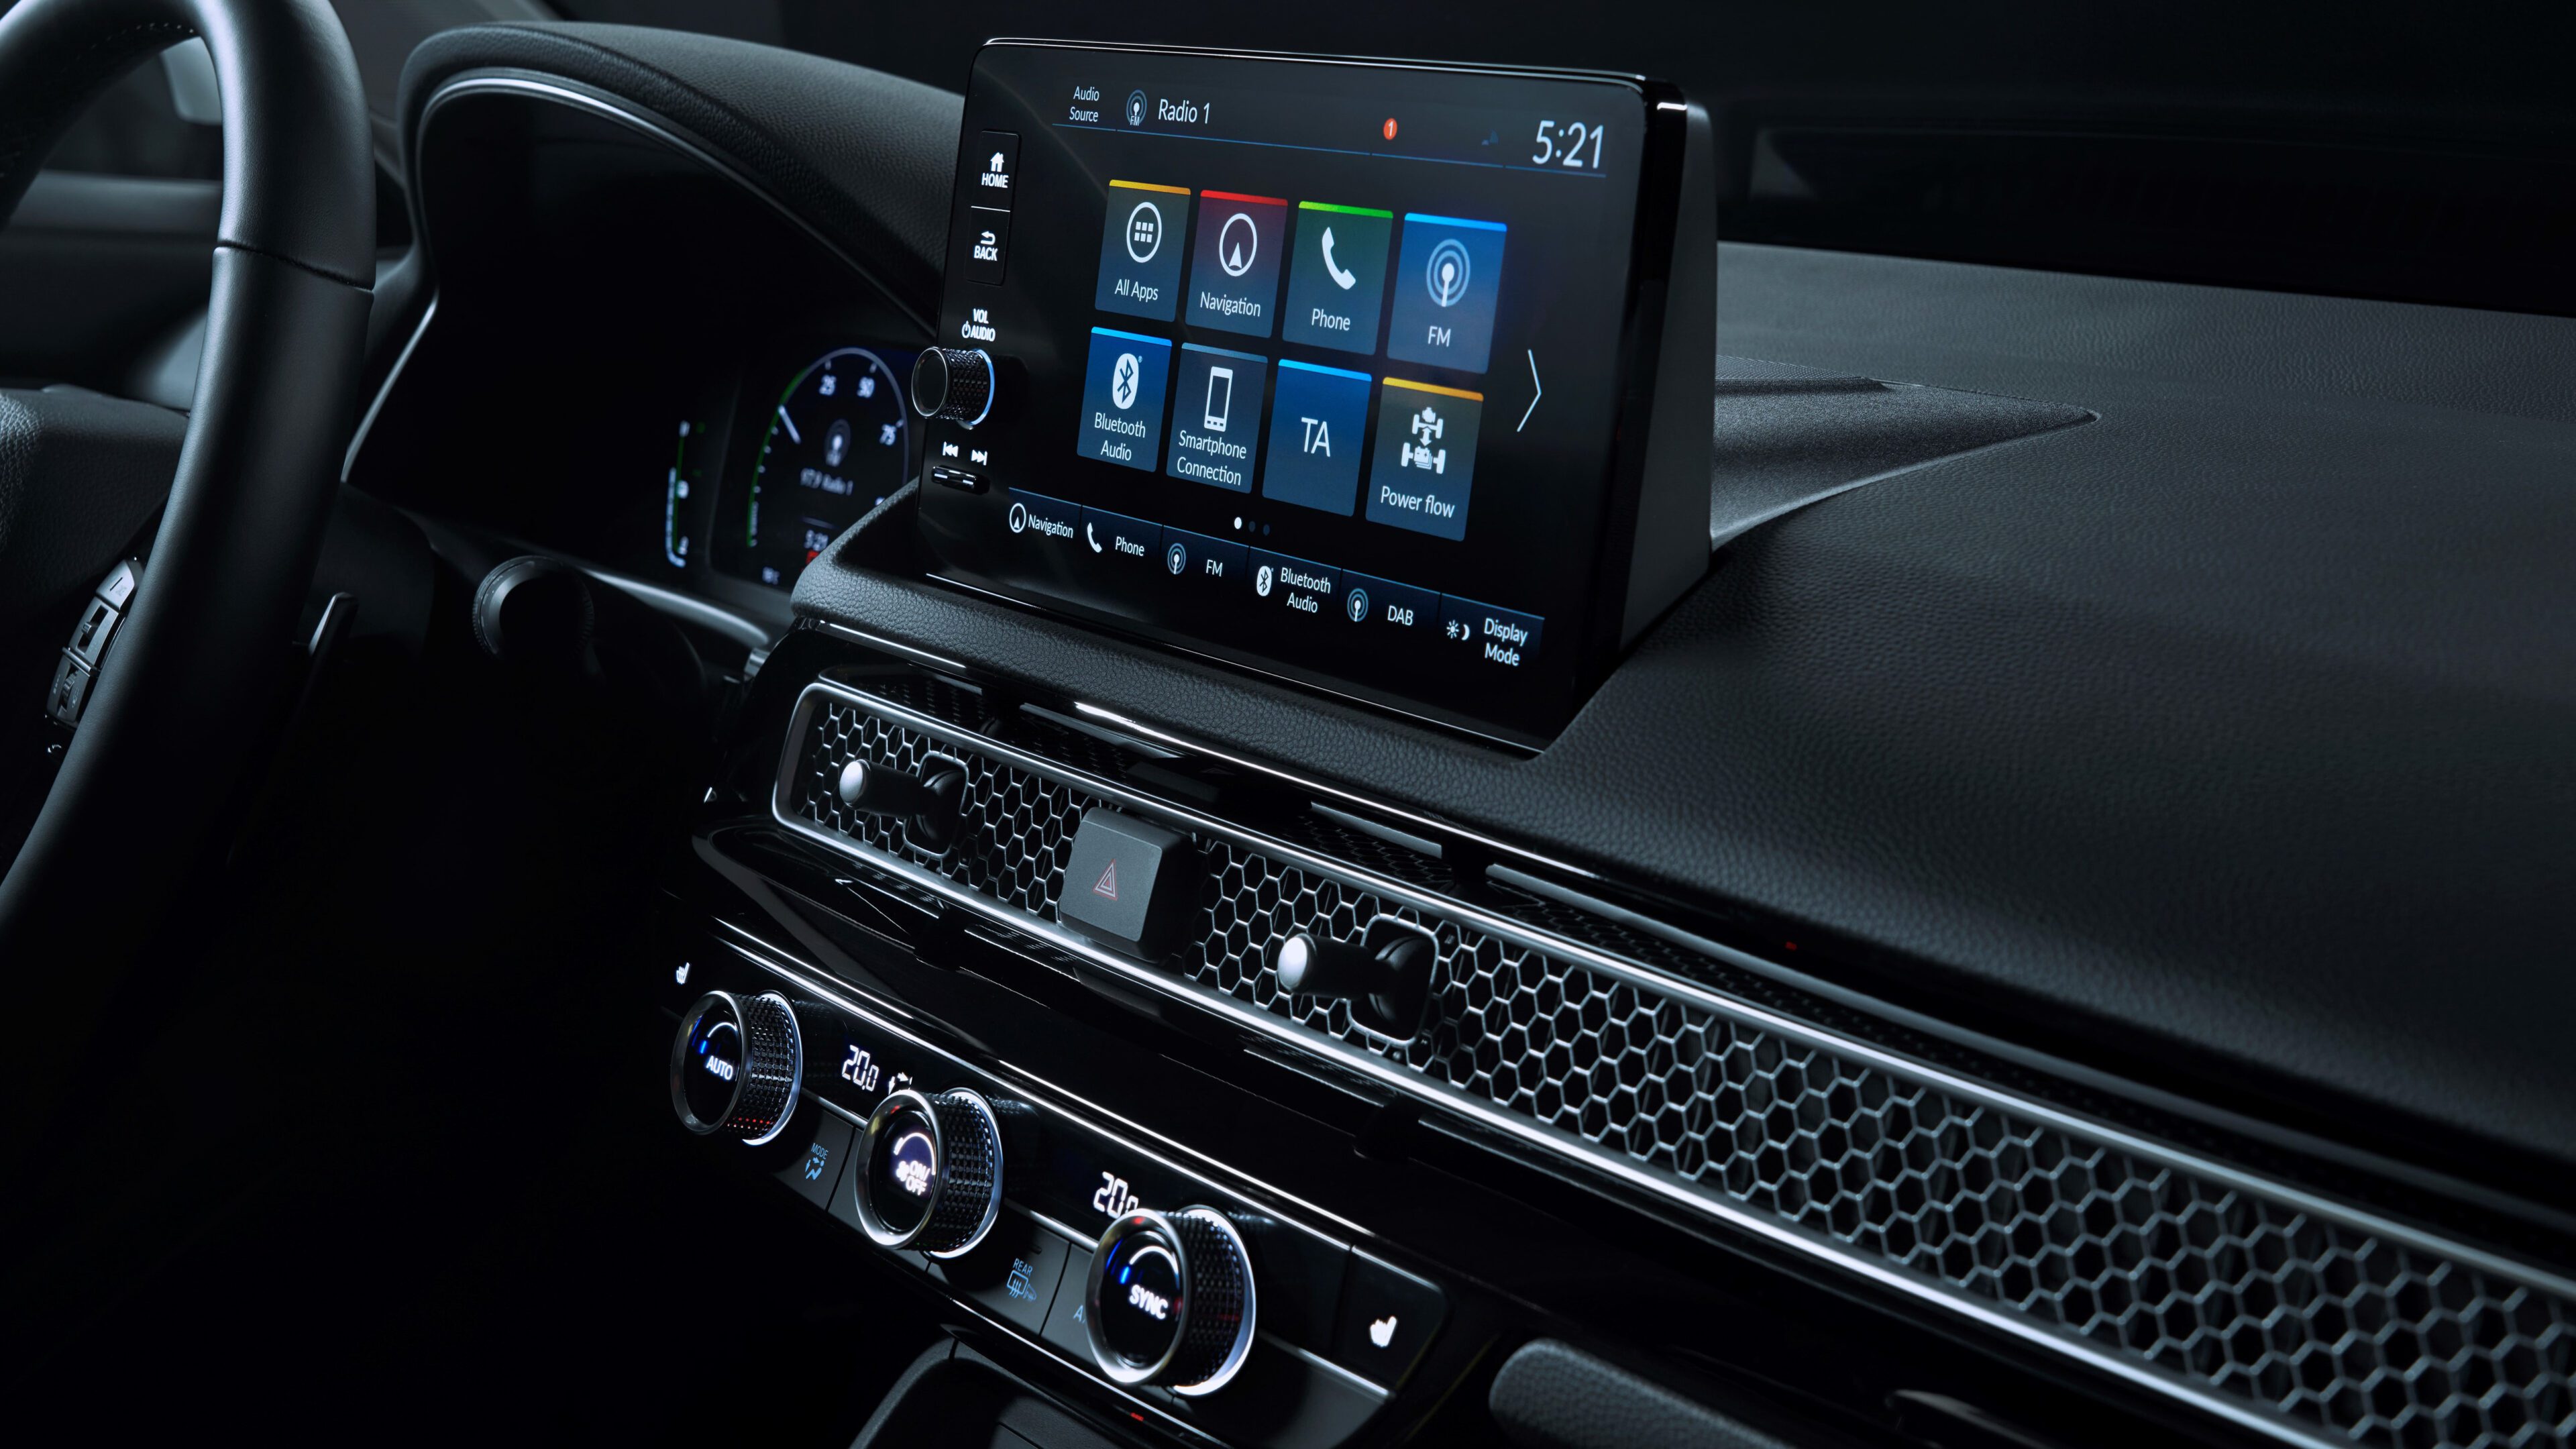 De nieuwe Civic biedt een intuïtief infotainmentpakket. Het formaat van het centrale touchscreen is vergroot tot negen inch en is naar boven verplaatst om het op- en neerkijken met de ogen te beperken. Het systeem wordt compleet geleverd met draadloze Apple CarPlay- en Android Auto-compatibiliteit om inzittenden onderweg verbonden te houden.